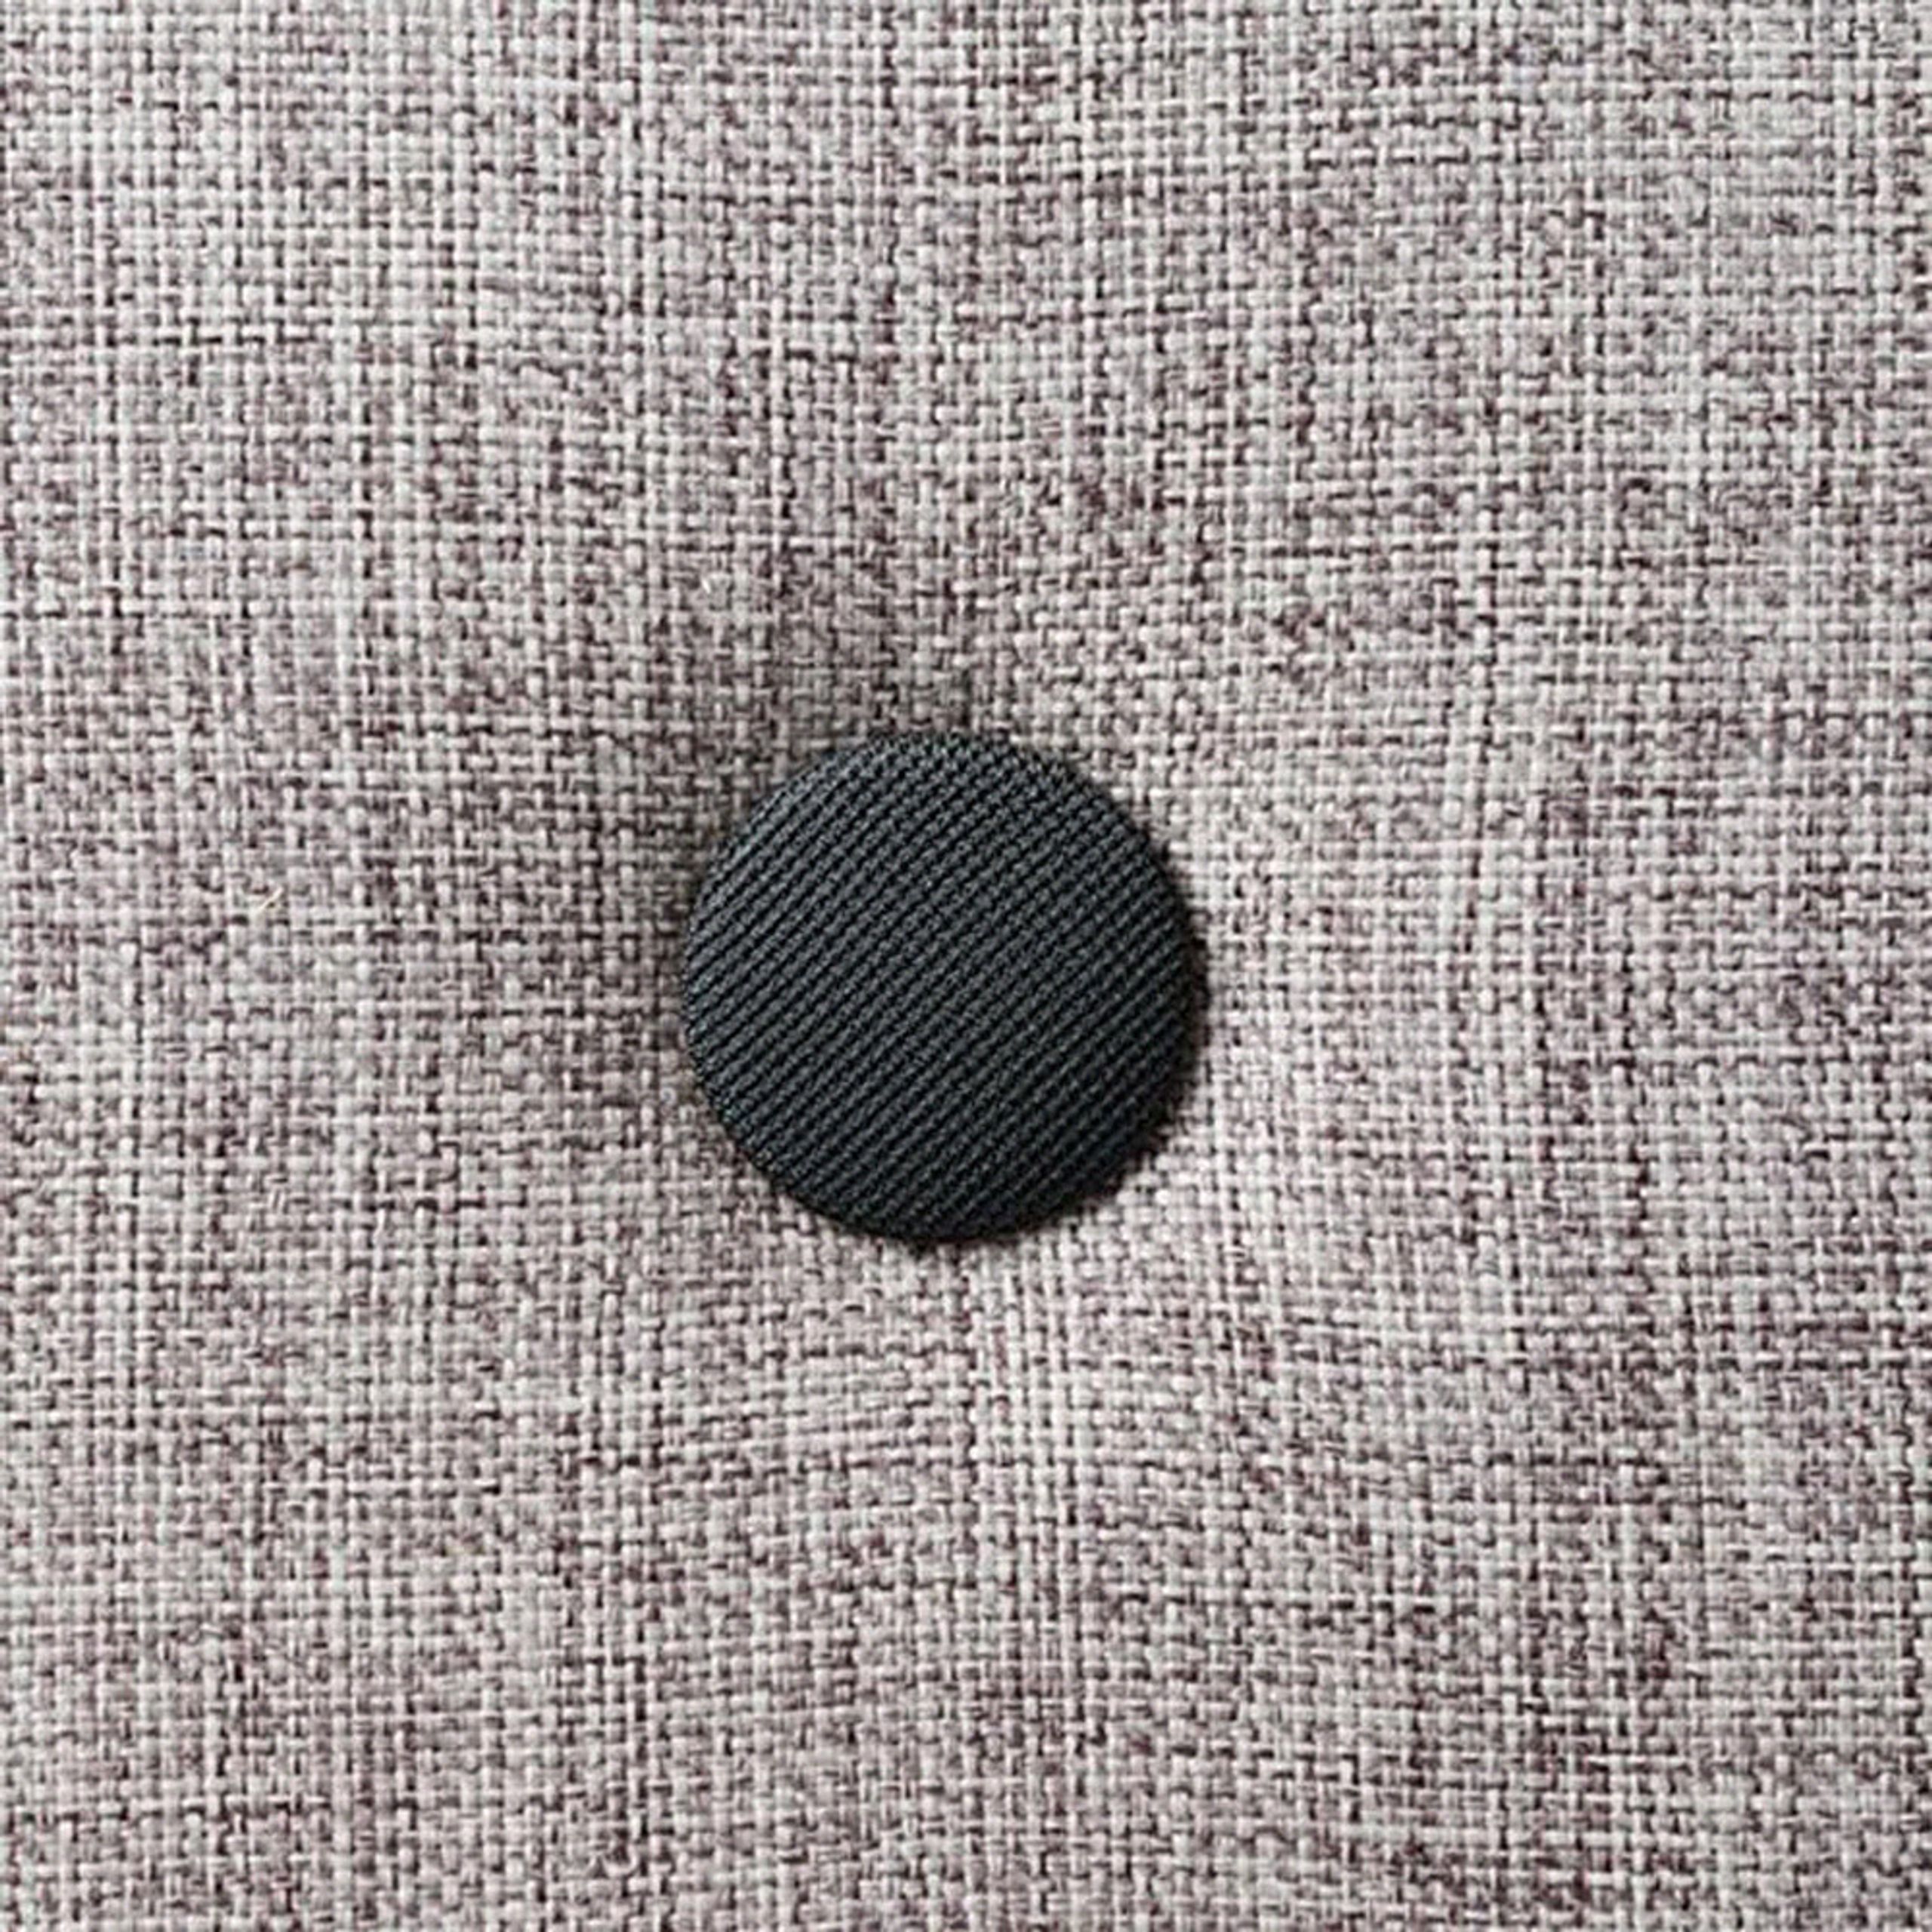 By KlipKlap - Sofá - KK 3 fold sofa w. buttons - XL - Multi Grey w/ Grey